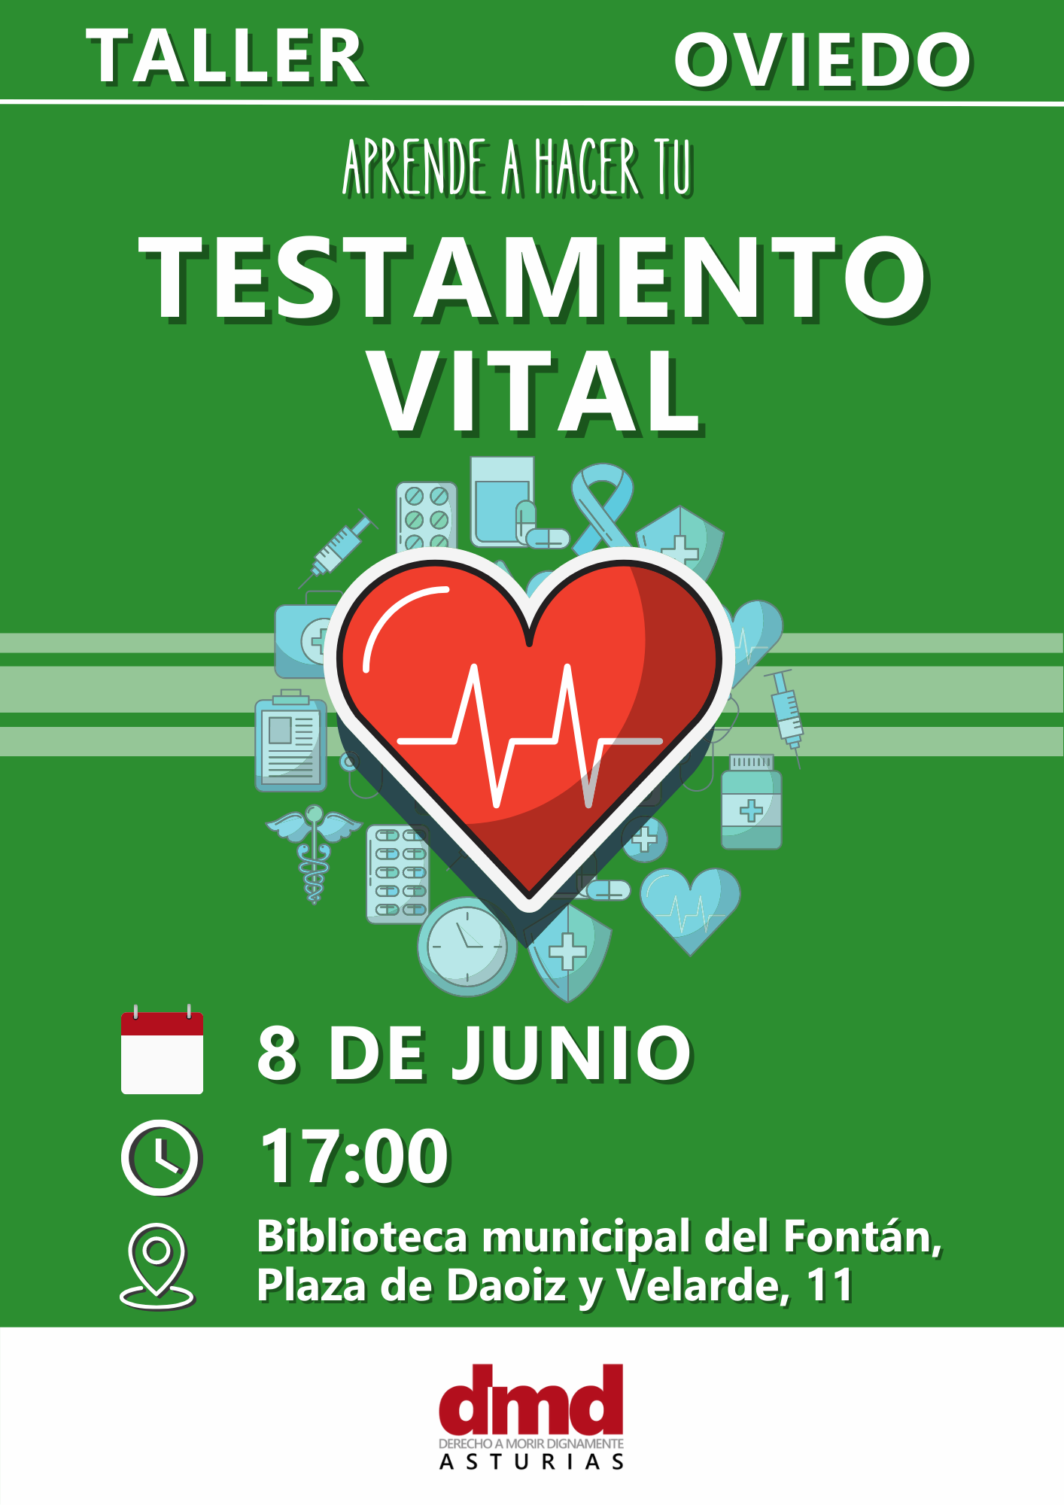 Taller de Testamento vital en Oviedo - 8 de junio, 17.00 horas